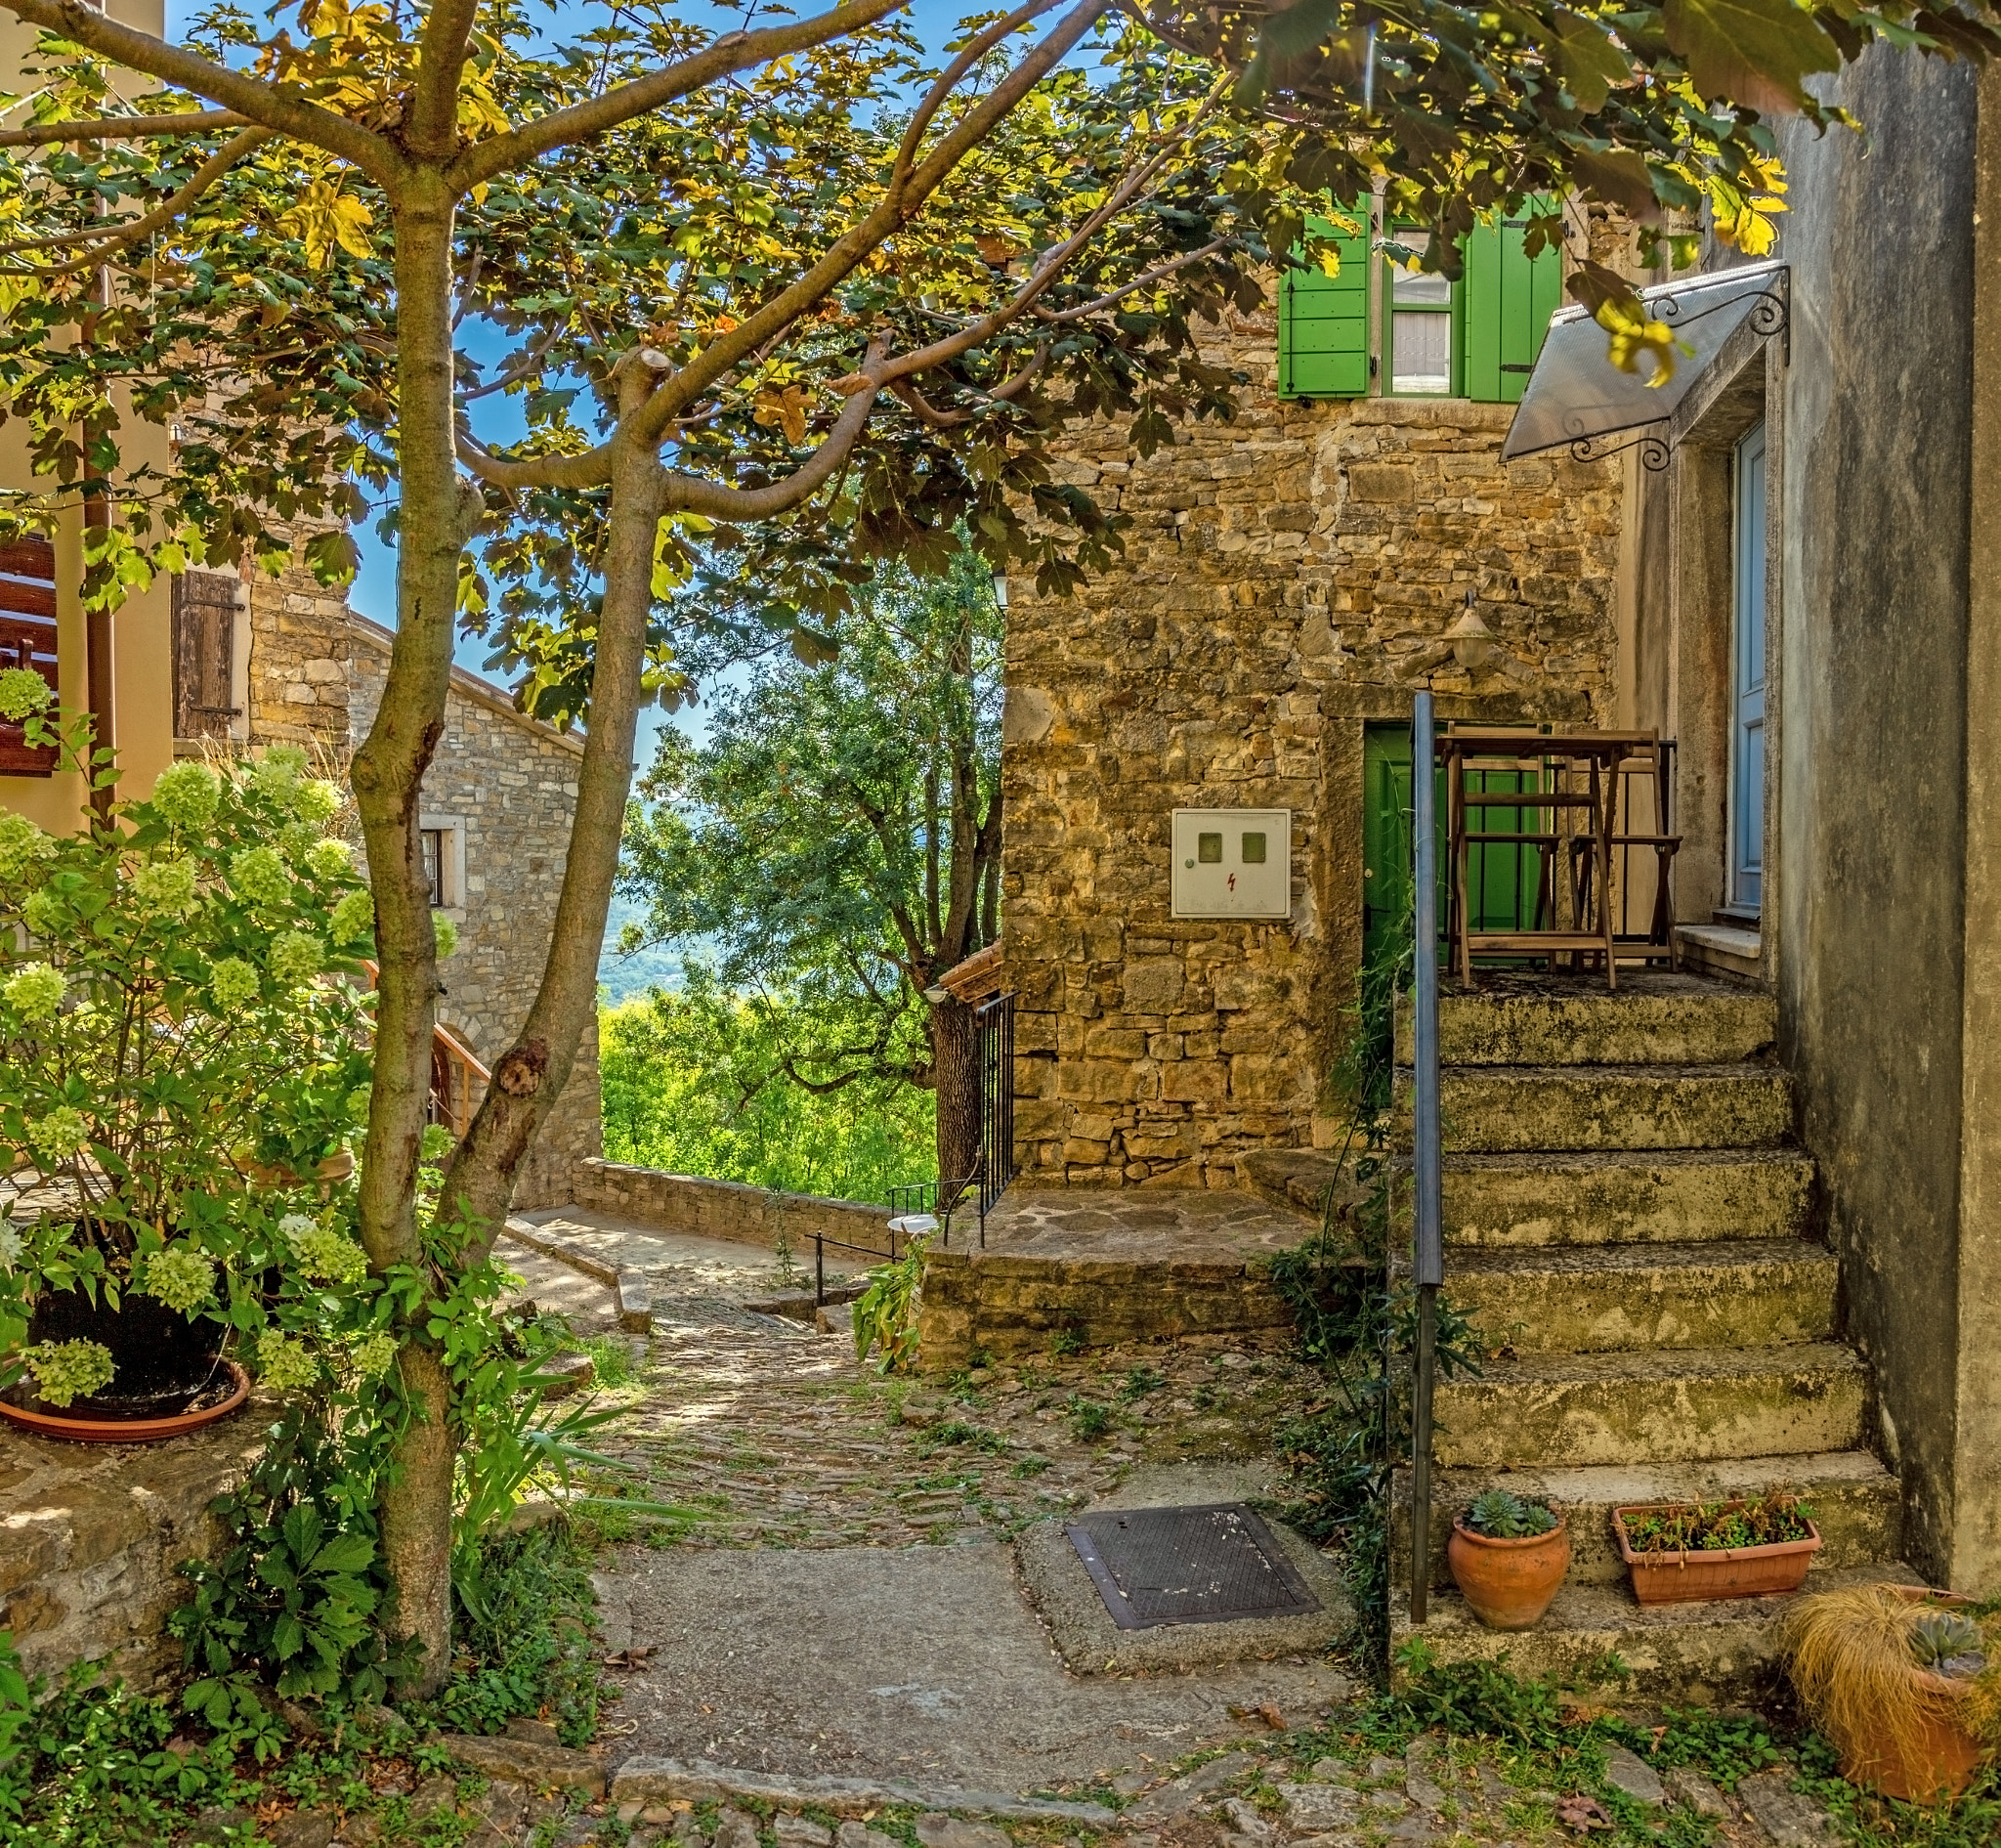 Picture of a romantic cobblestone street in Motovun